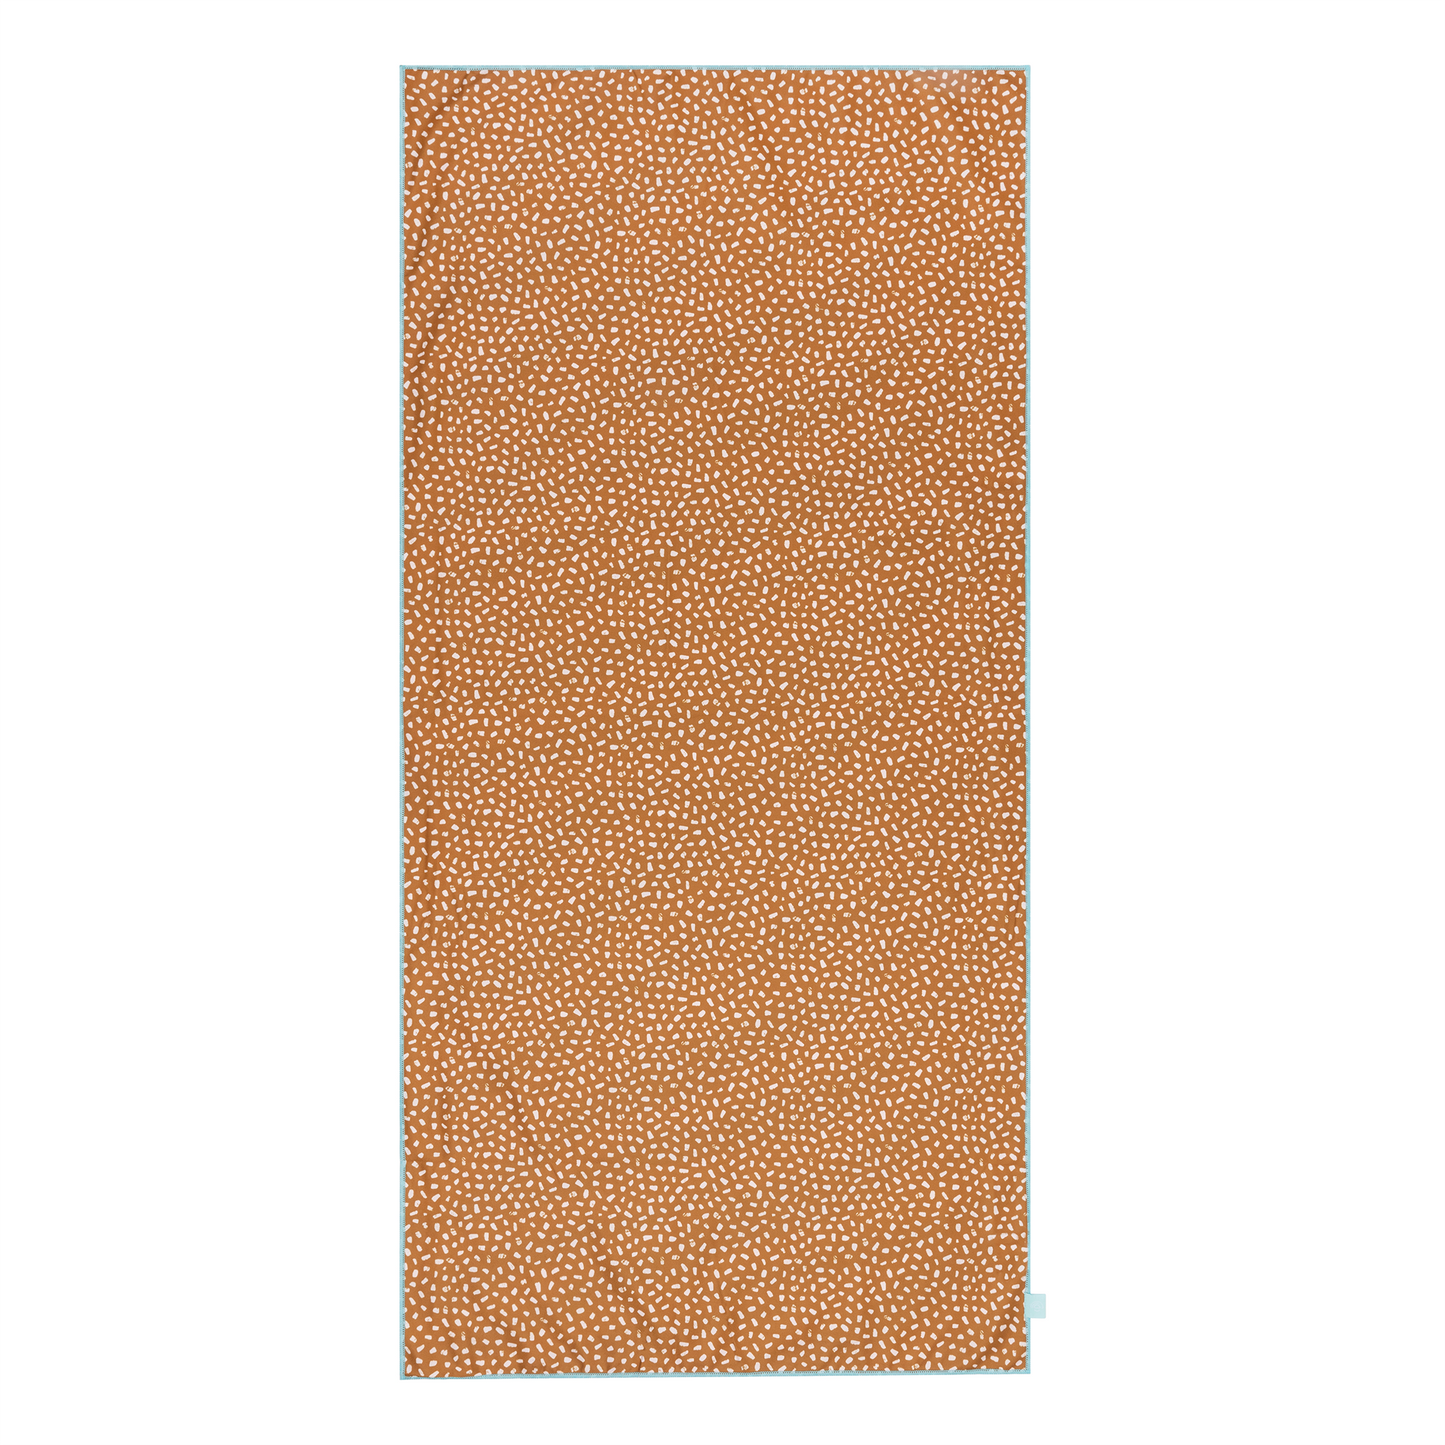 SE Microfiber Towel Zebra Orange 135 x 65 cm